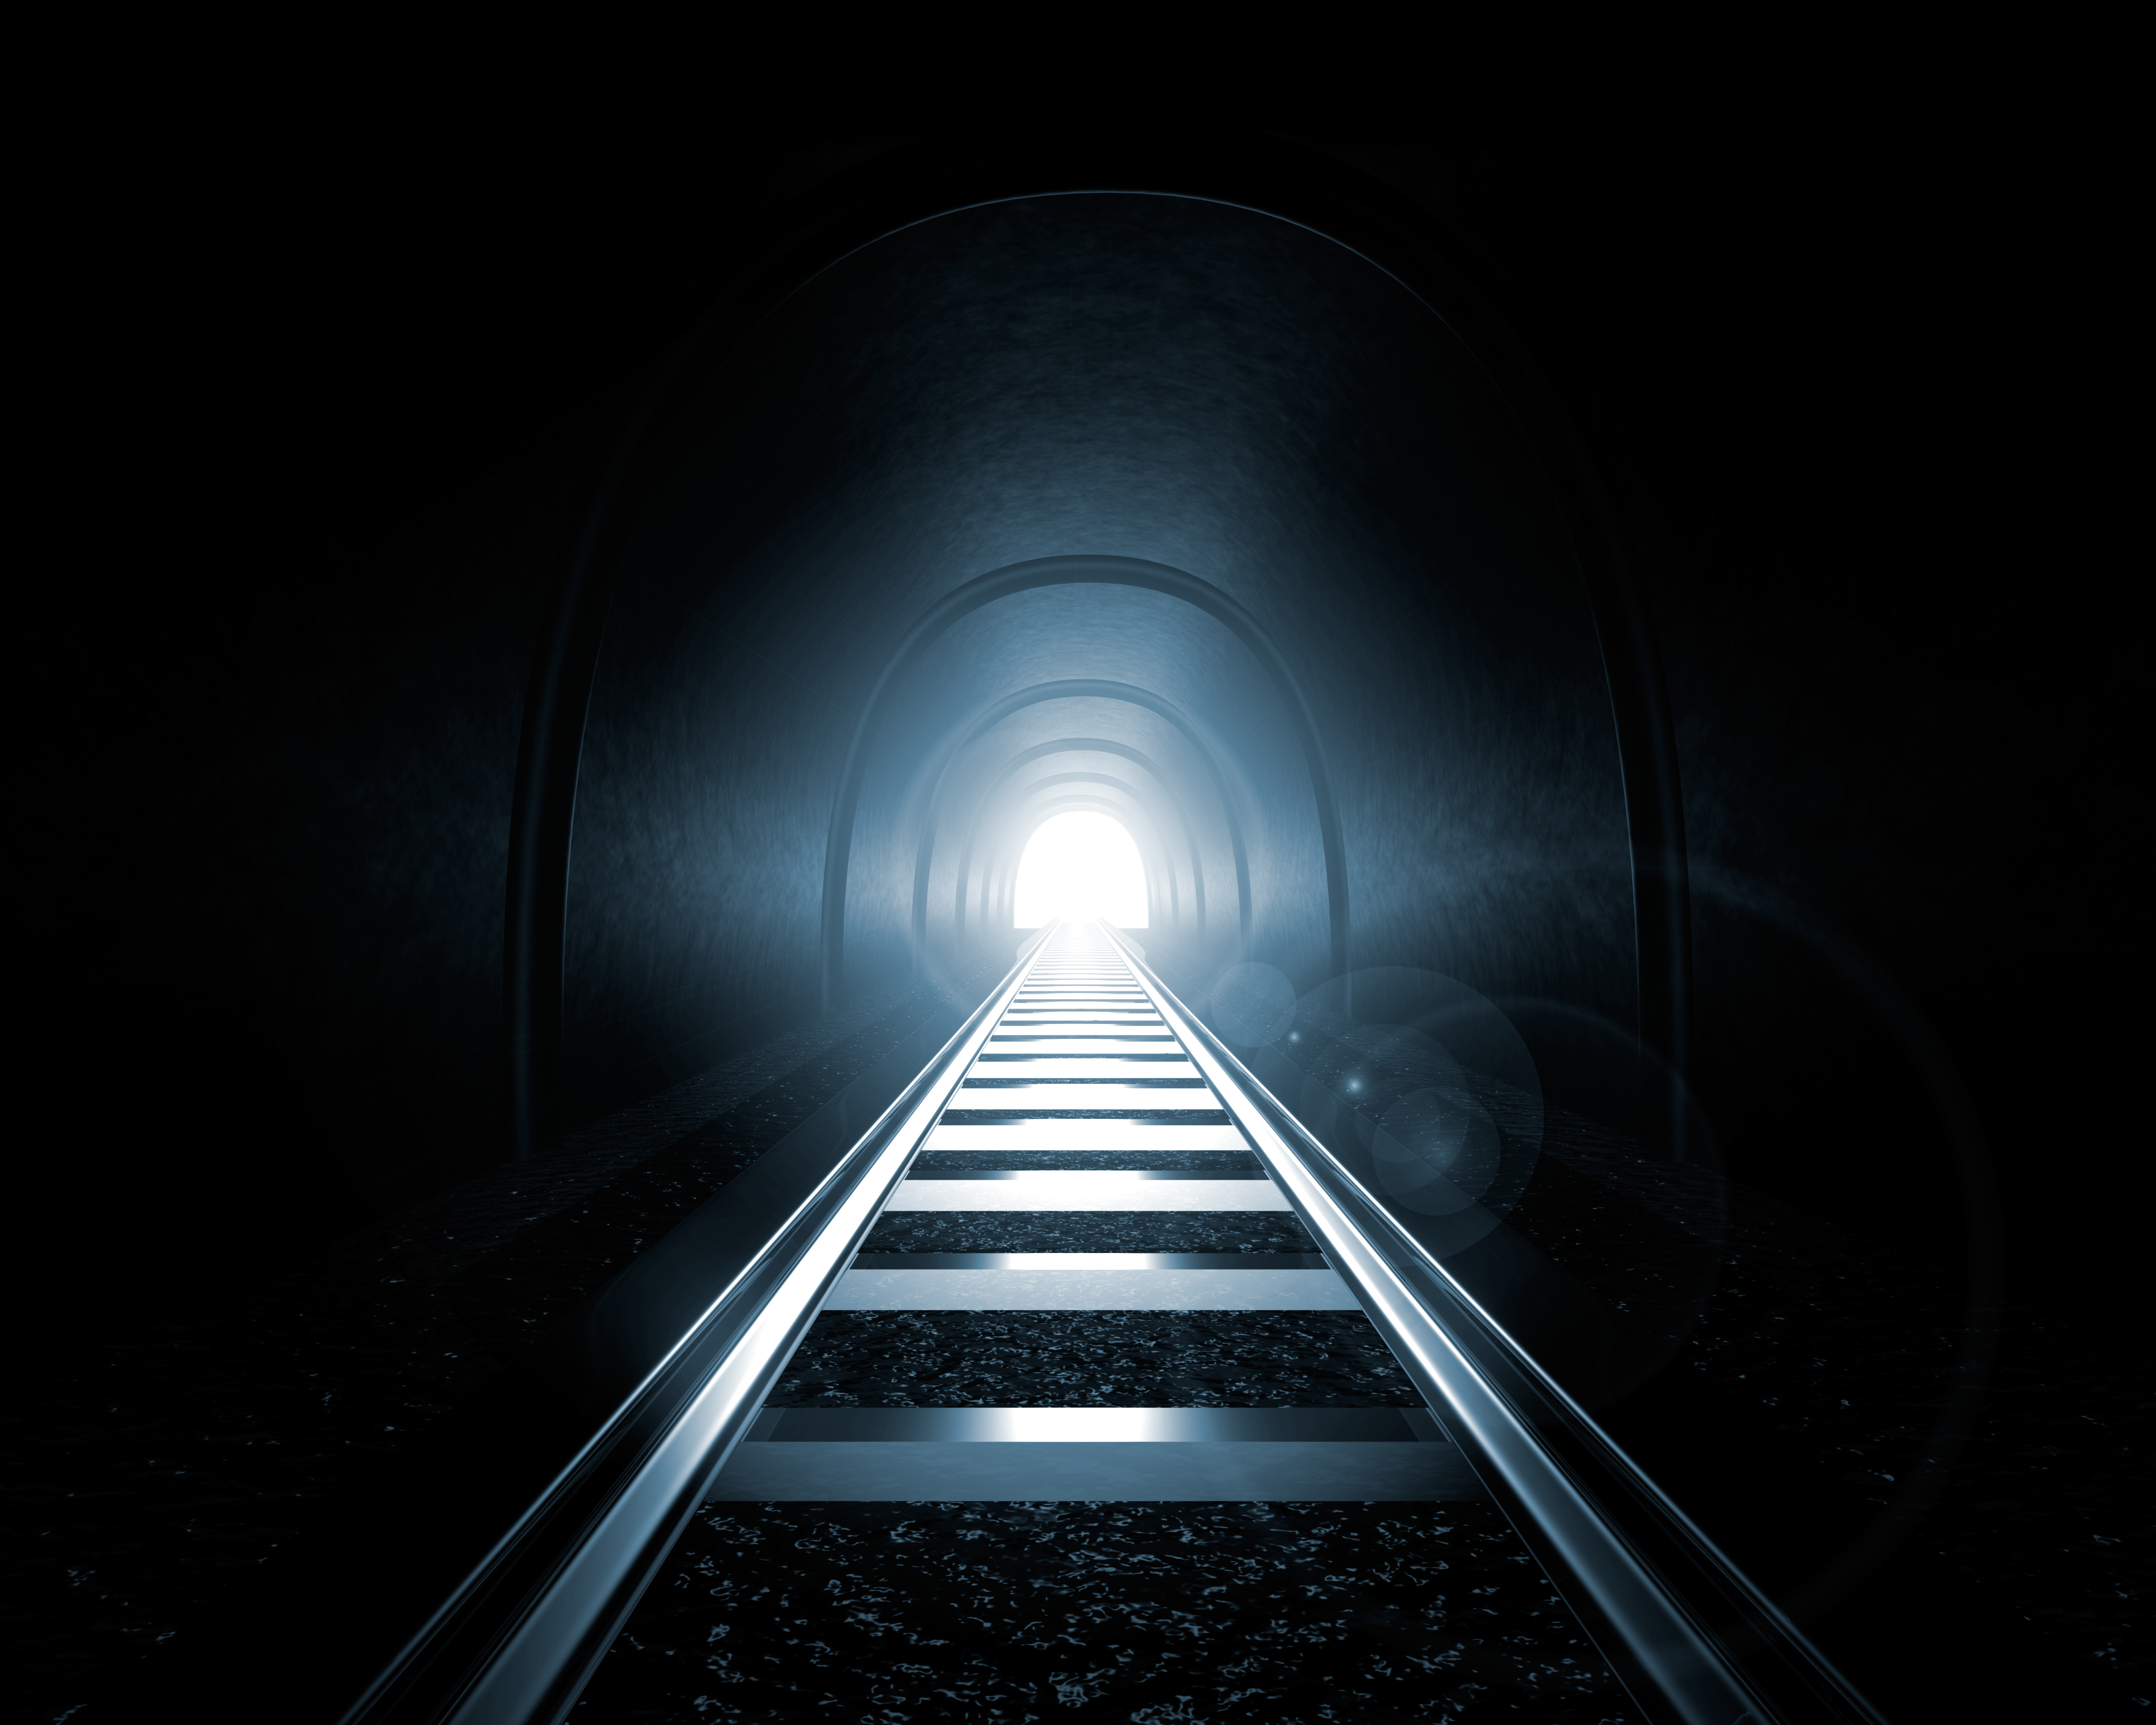 There is light in us. Свет в тоннеле. Свет в конце тоннеля. Белый свет в конце тоннеля. Свет в конце туннеля или тоннеля.